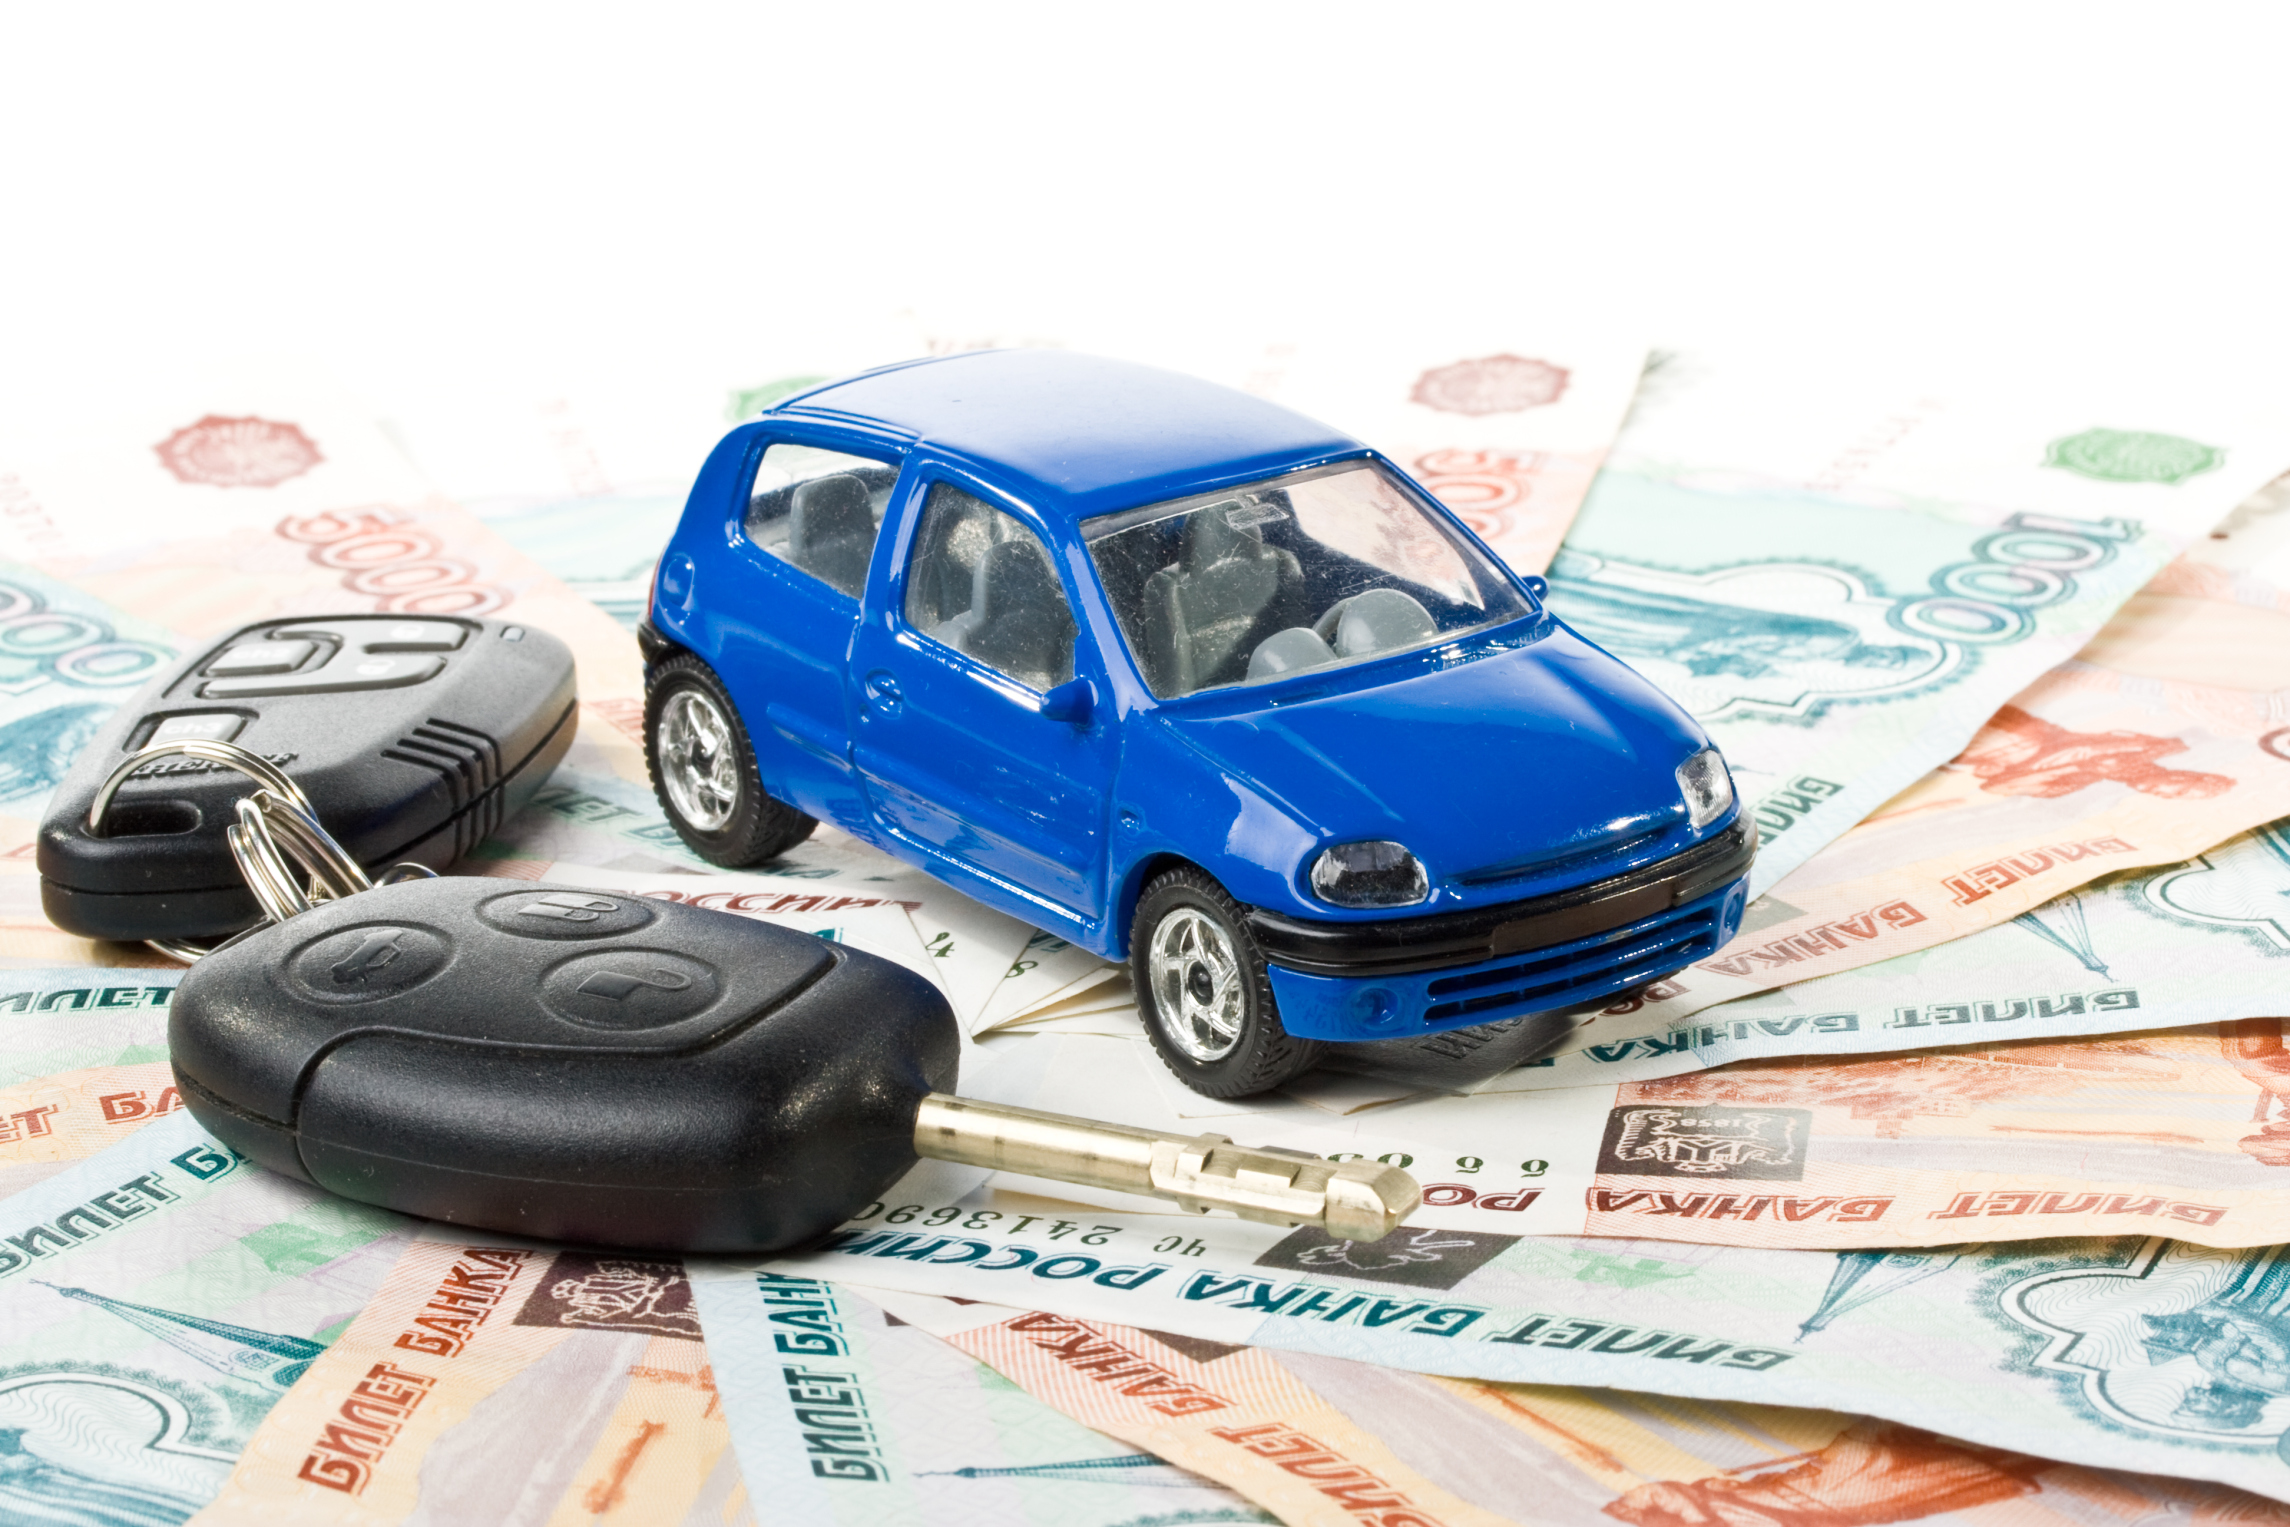 Как получить кредит под залог автомобиля при неблагоприятной кредитной истории: выгодное предложение для финансовой реабилитации — лучшие условия и возможности